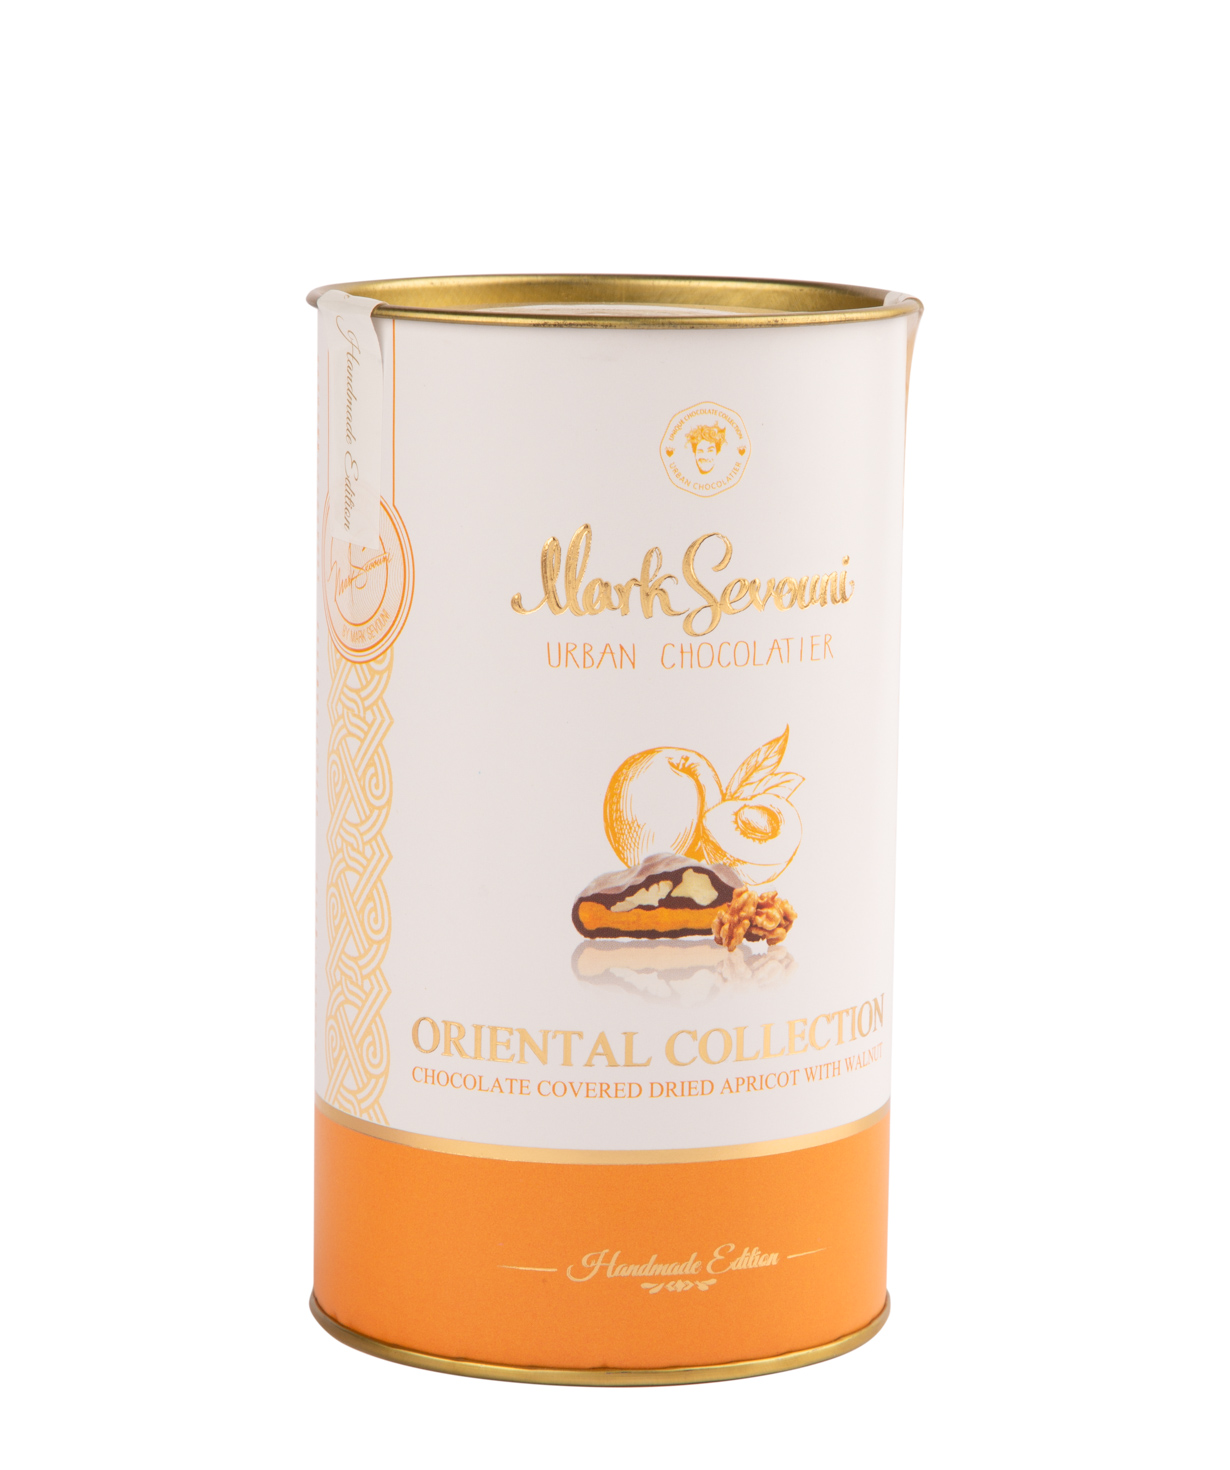 Ծիրանի չիր «Mark Sevouni» շոկոլադապատ Oriental Chocolate Collection